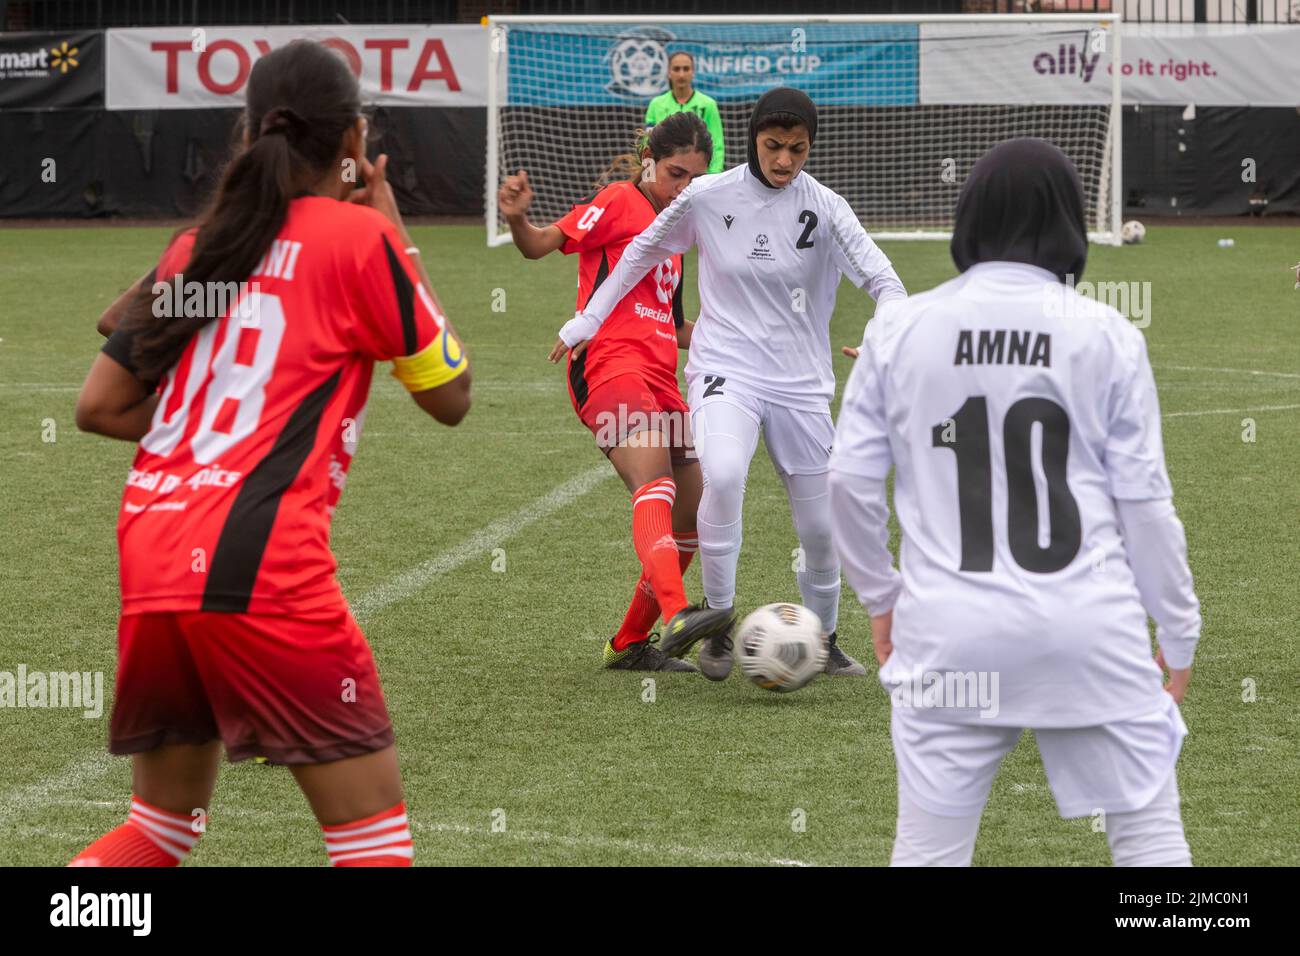 Detroit, Michigan - les équipes féminines des Émirats arabes Unis et du Sri Lanka se rencontrent dans le tournoi de football de la coupe unifiée des Jeux Olympiques spéciaux. Banque D'Images